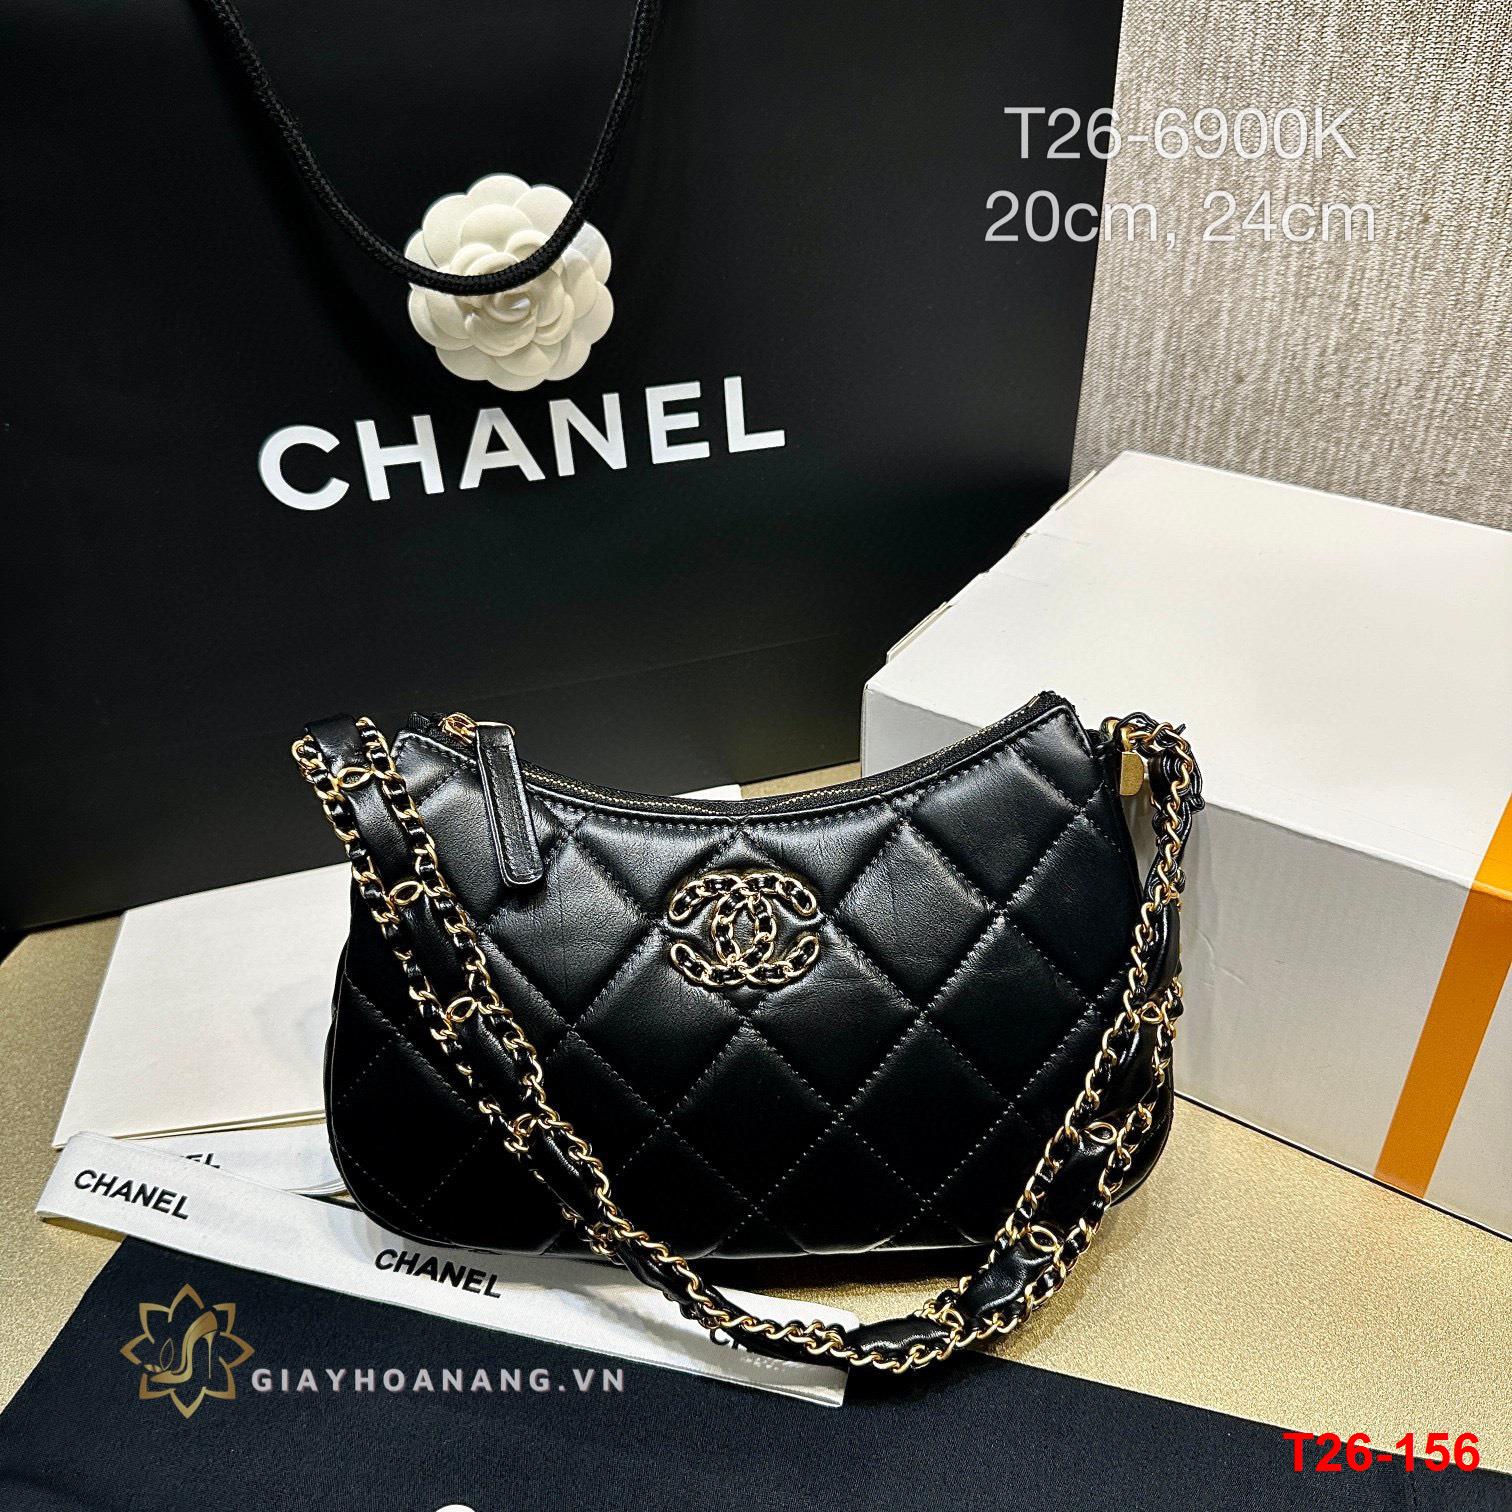 T26-156 Chanel túi siêu cấp size 20cm, size 24cm